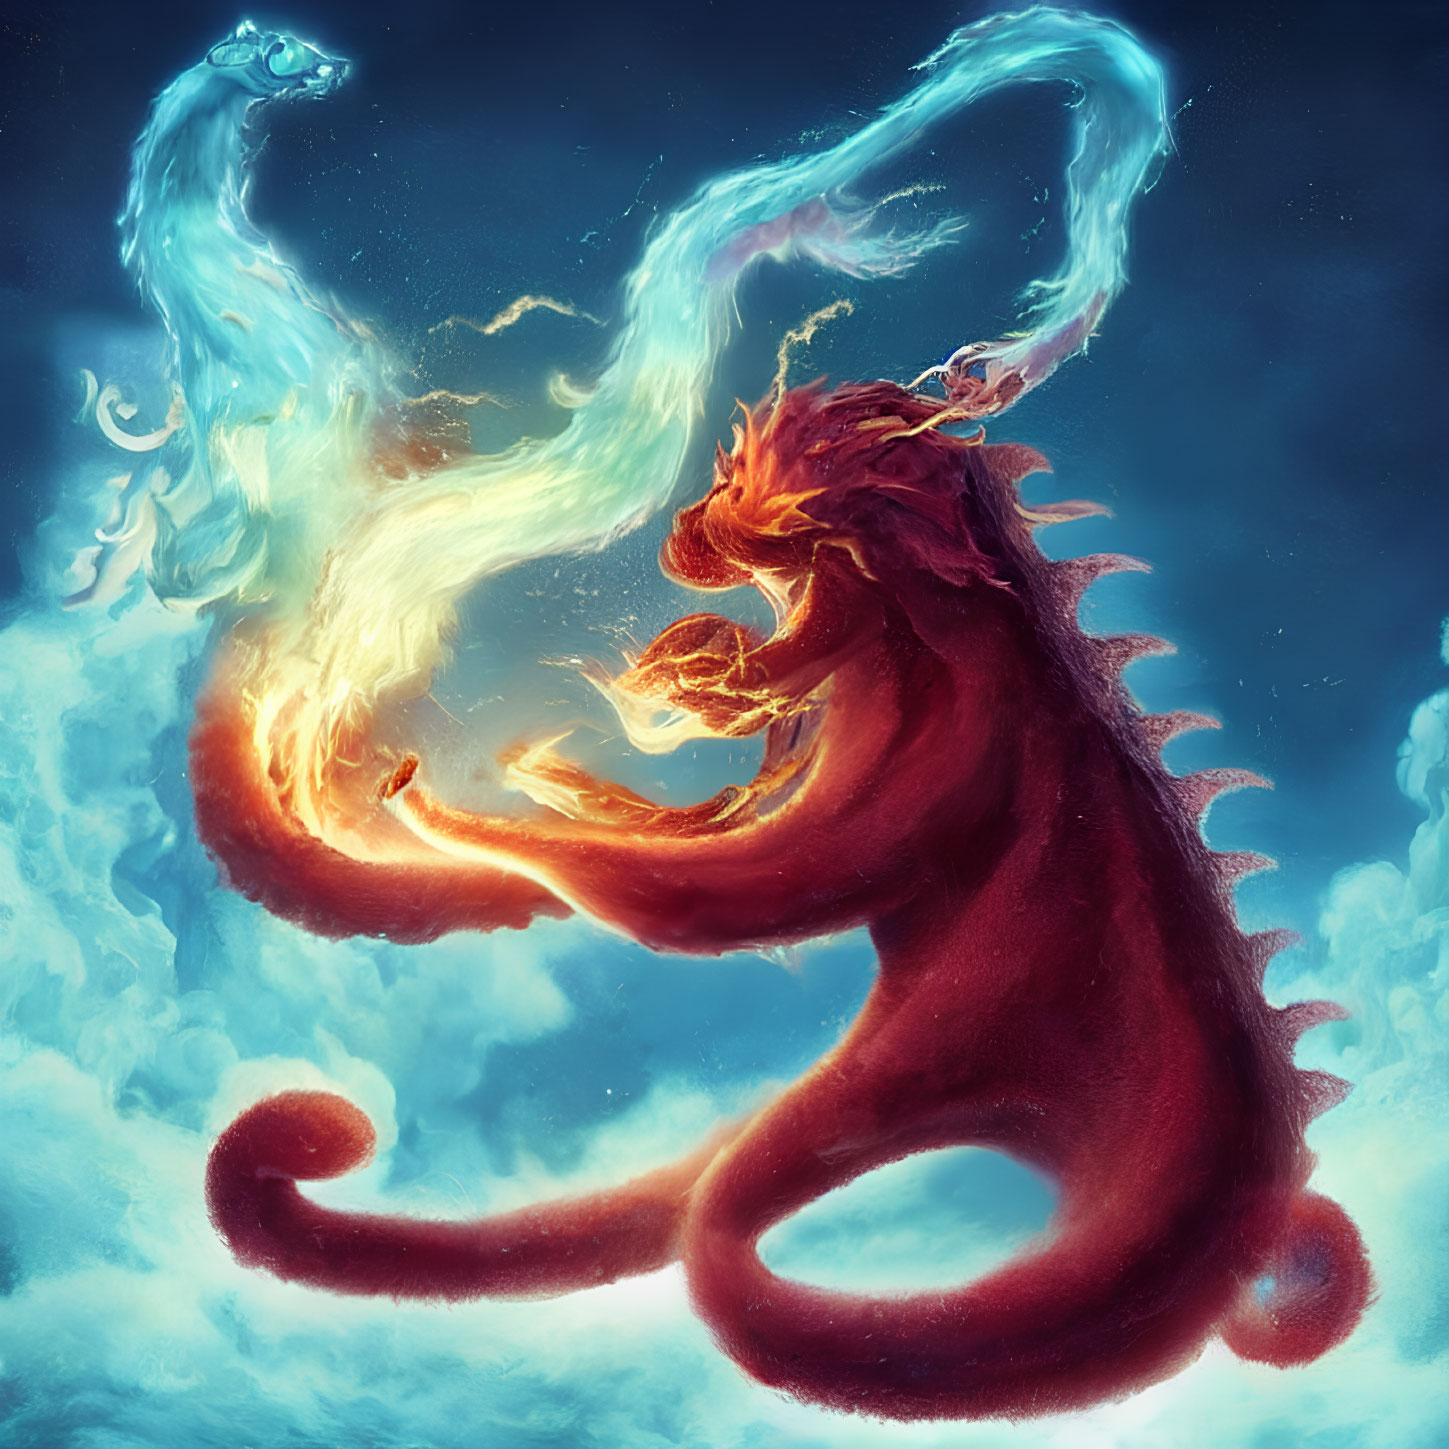 Fiery red dragon battles water dragon in elemental clash